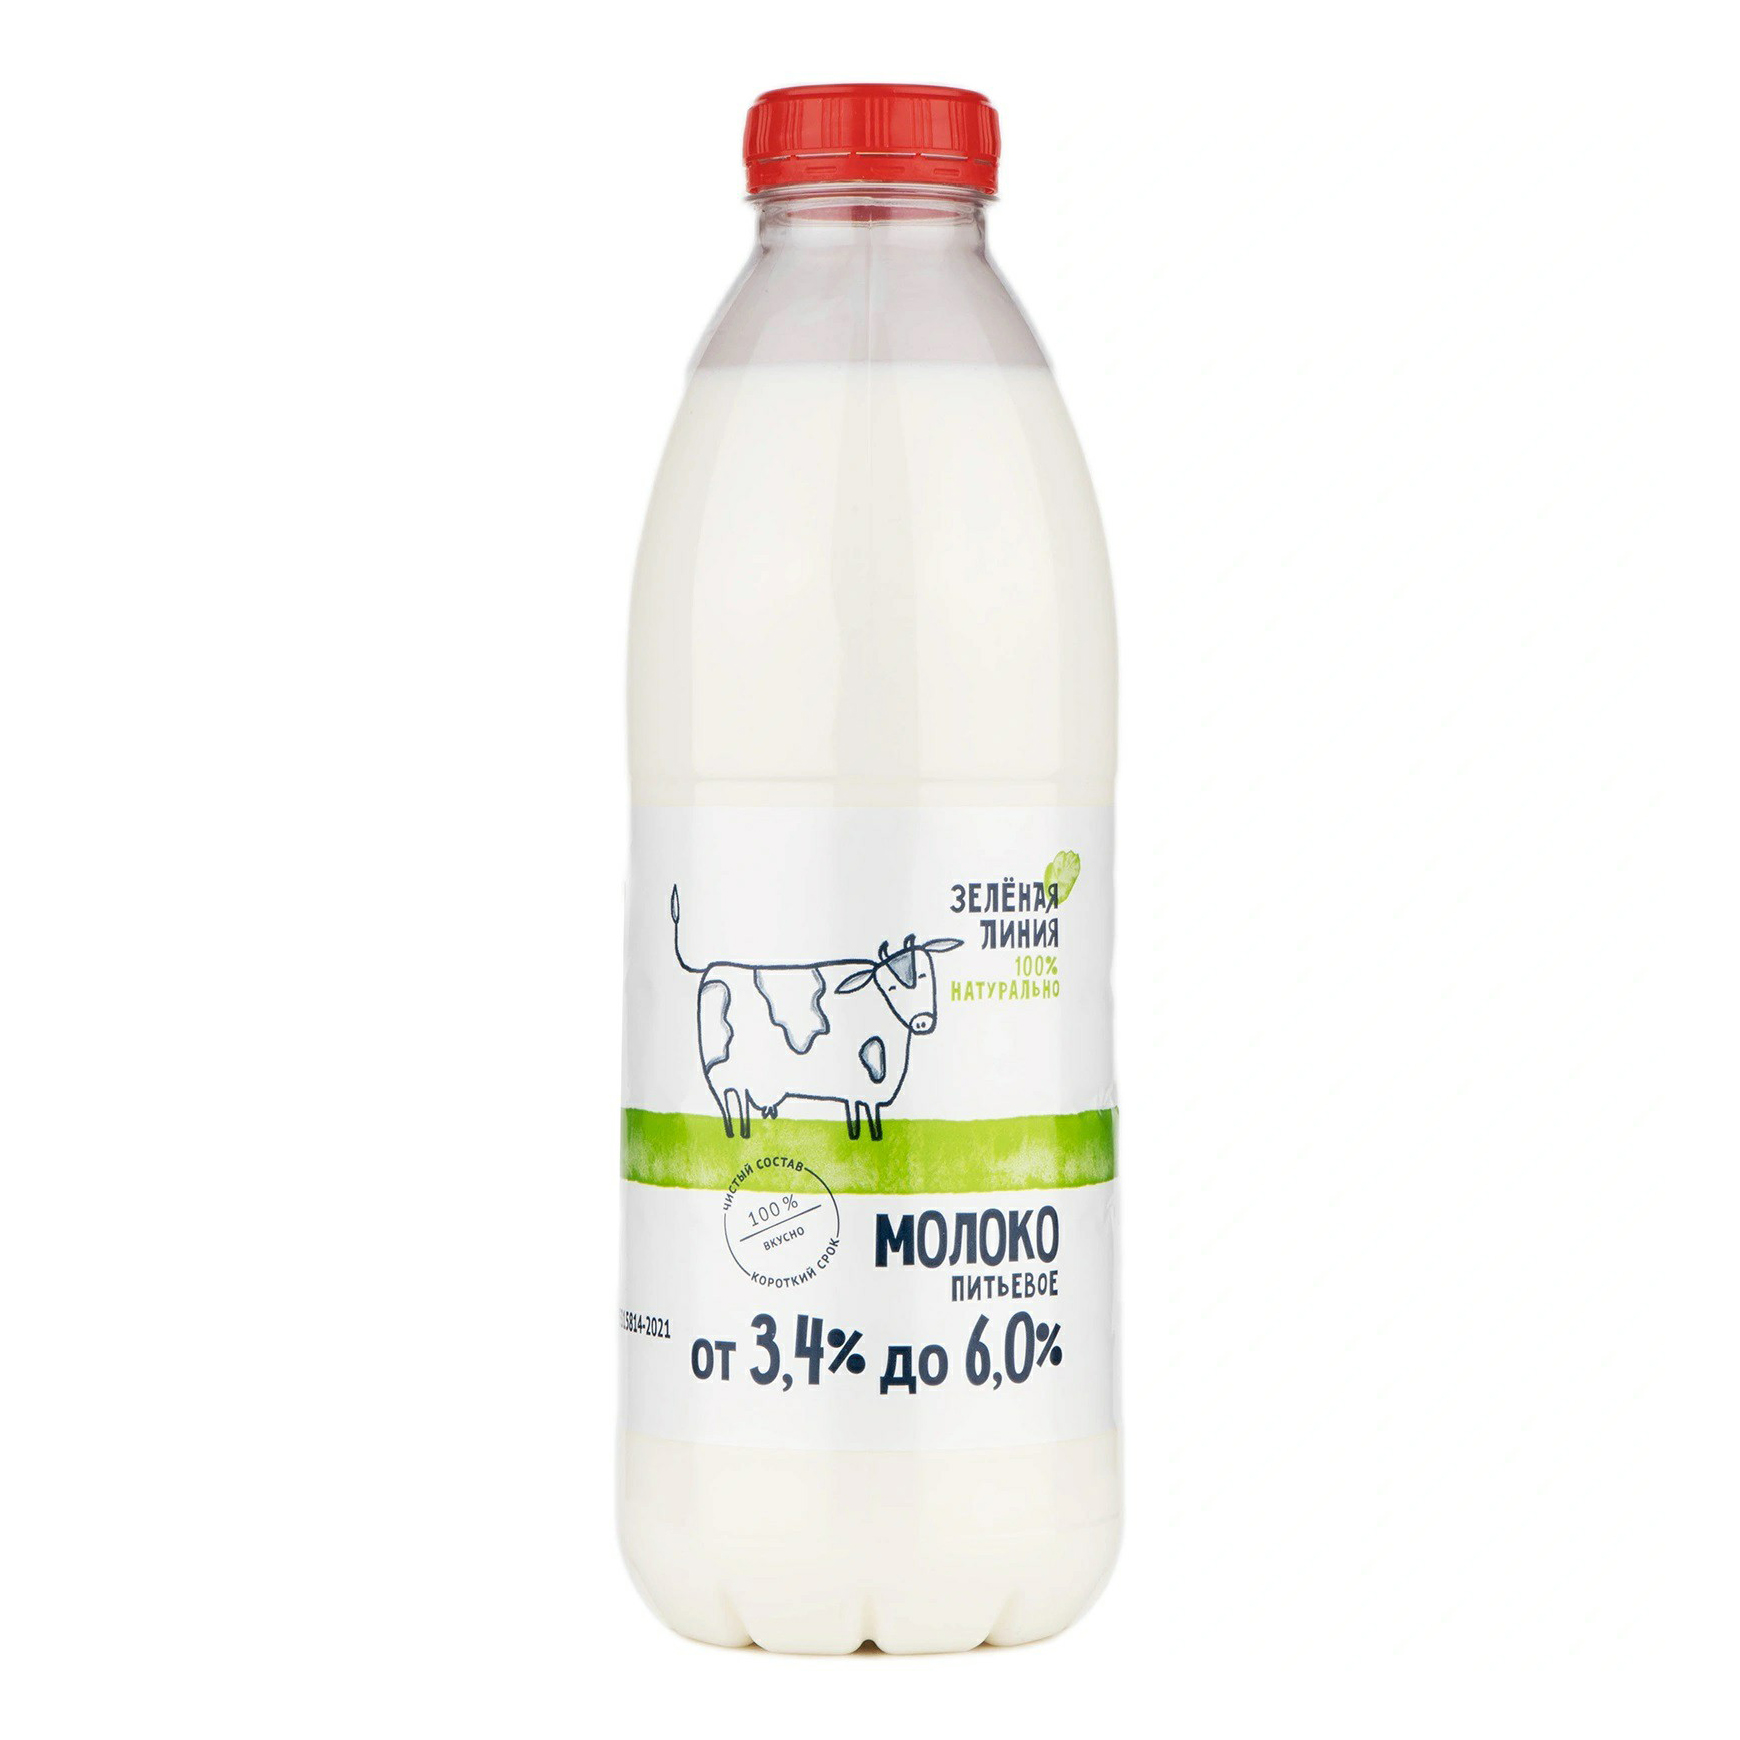 Молоко Зелёная линия пастеризованное 3,4 - 6% 900 мл